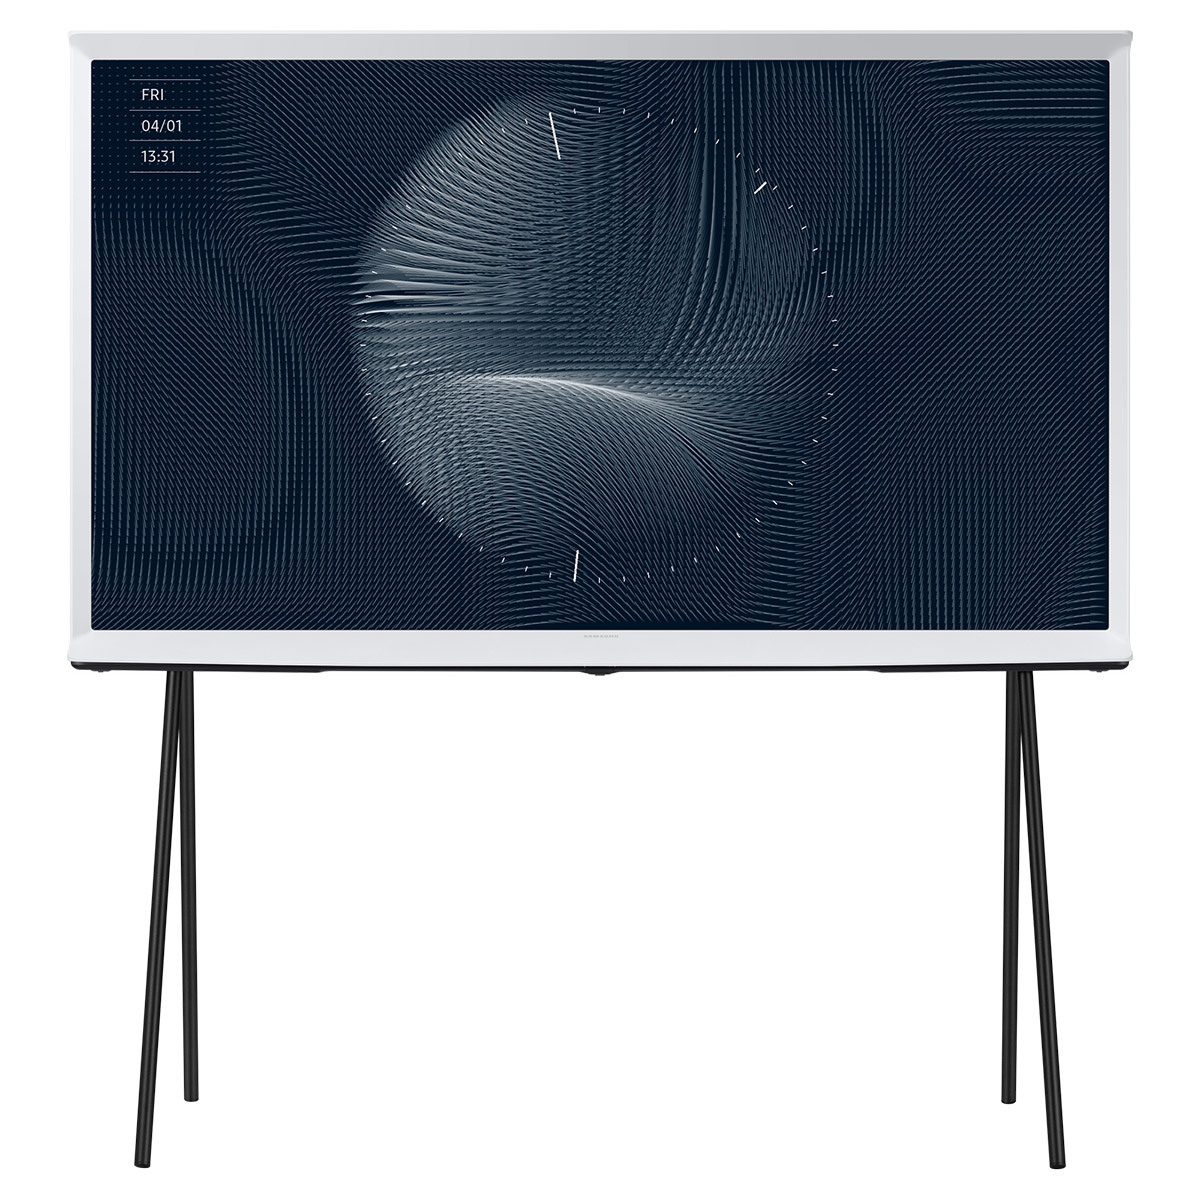 삼성 TV 세트QLED 247cm (98) + 더세리프125cm  (50)